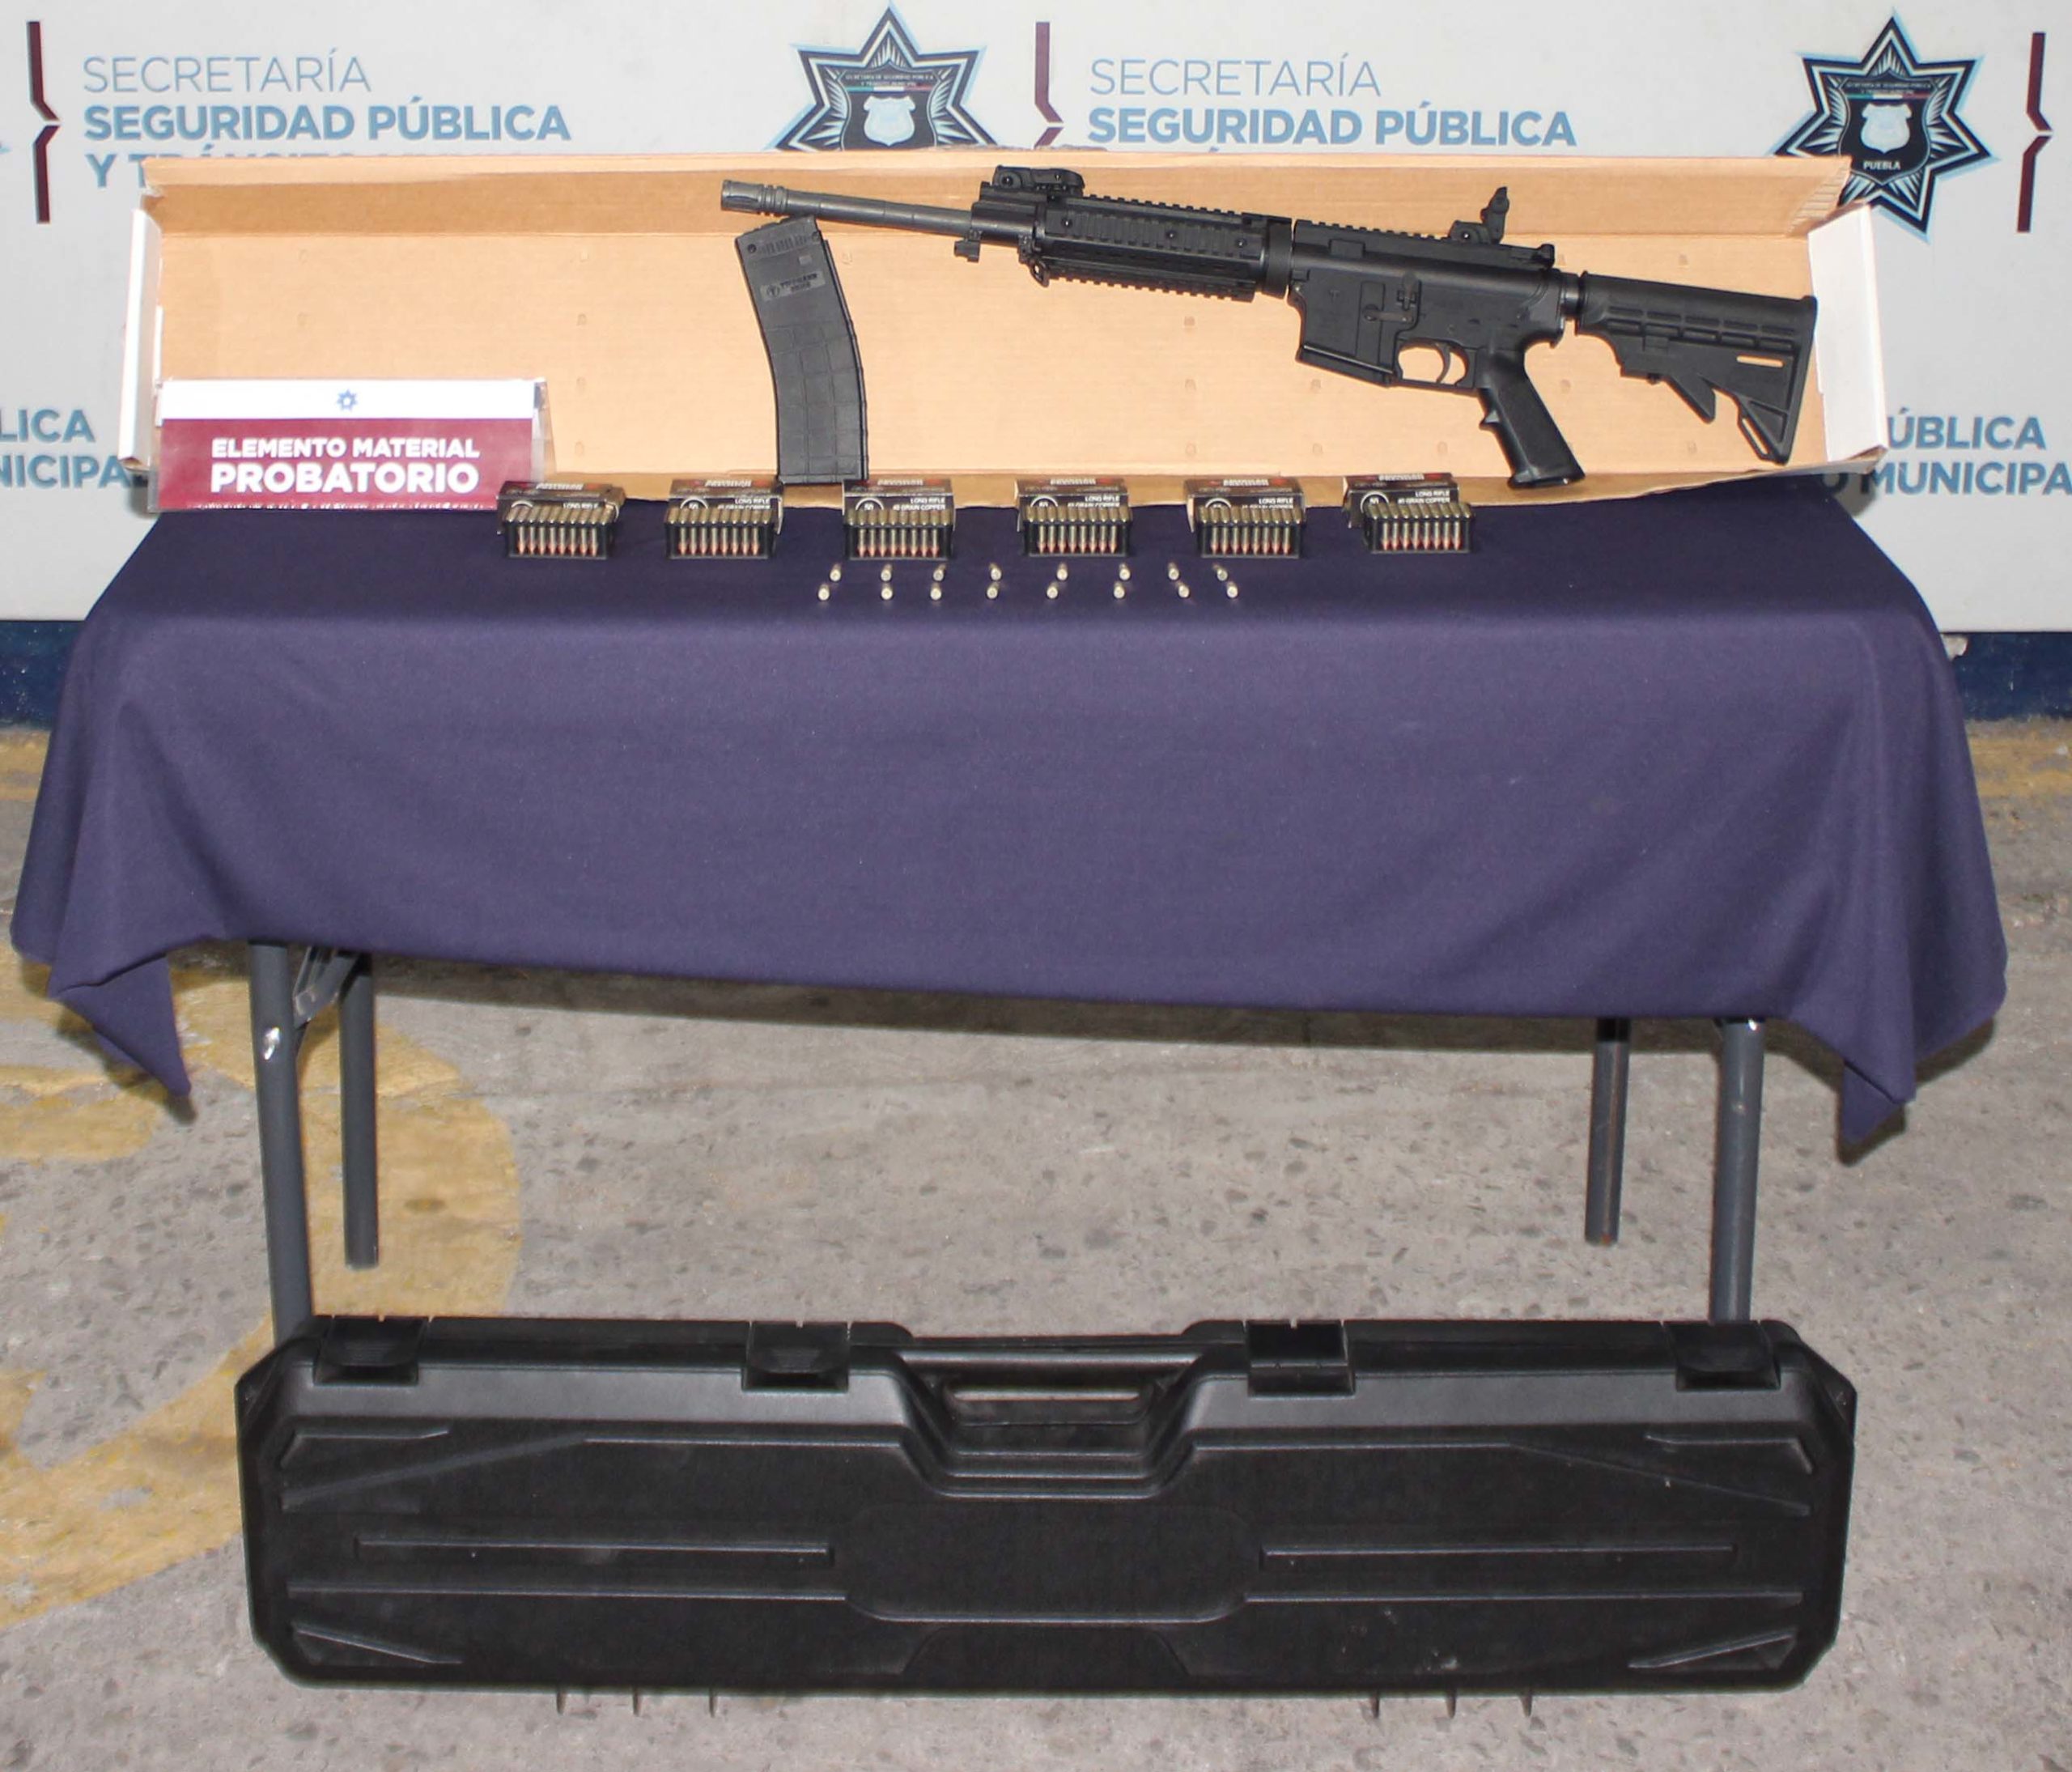 Secretaría de Seguridad Ciudadana, Las Cuartillas, La Pedrera, Hummer, fusil AR-15, cartuchos, Ministerio Público